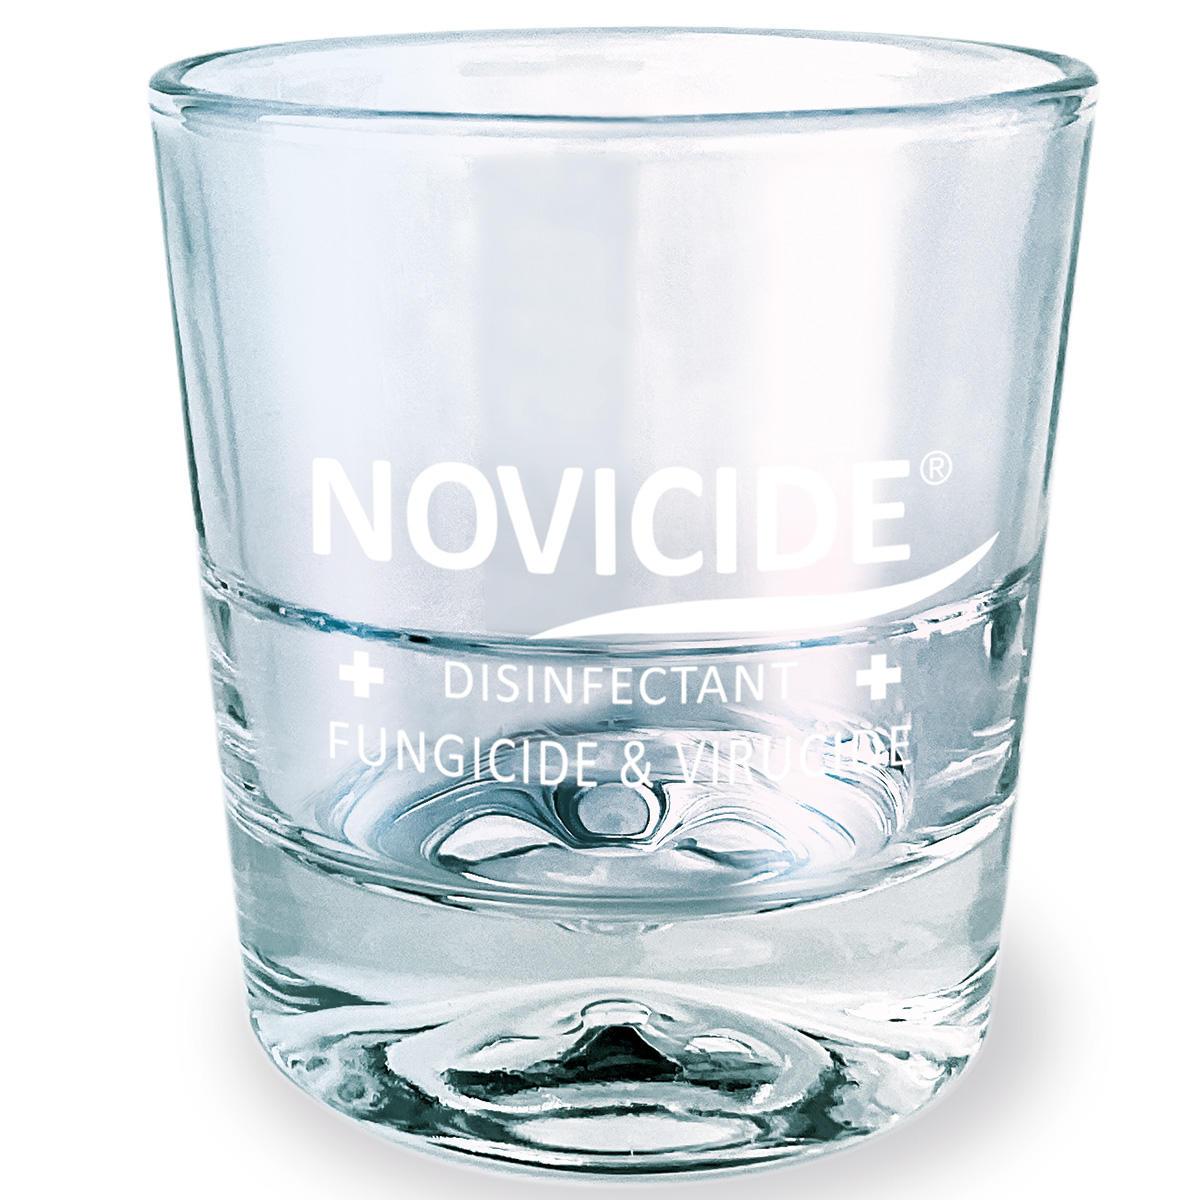 NOVICIDE Disinfection jar  - 1